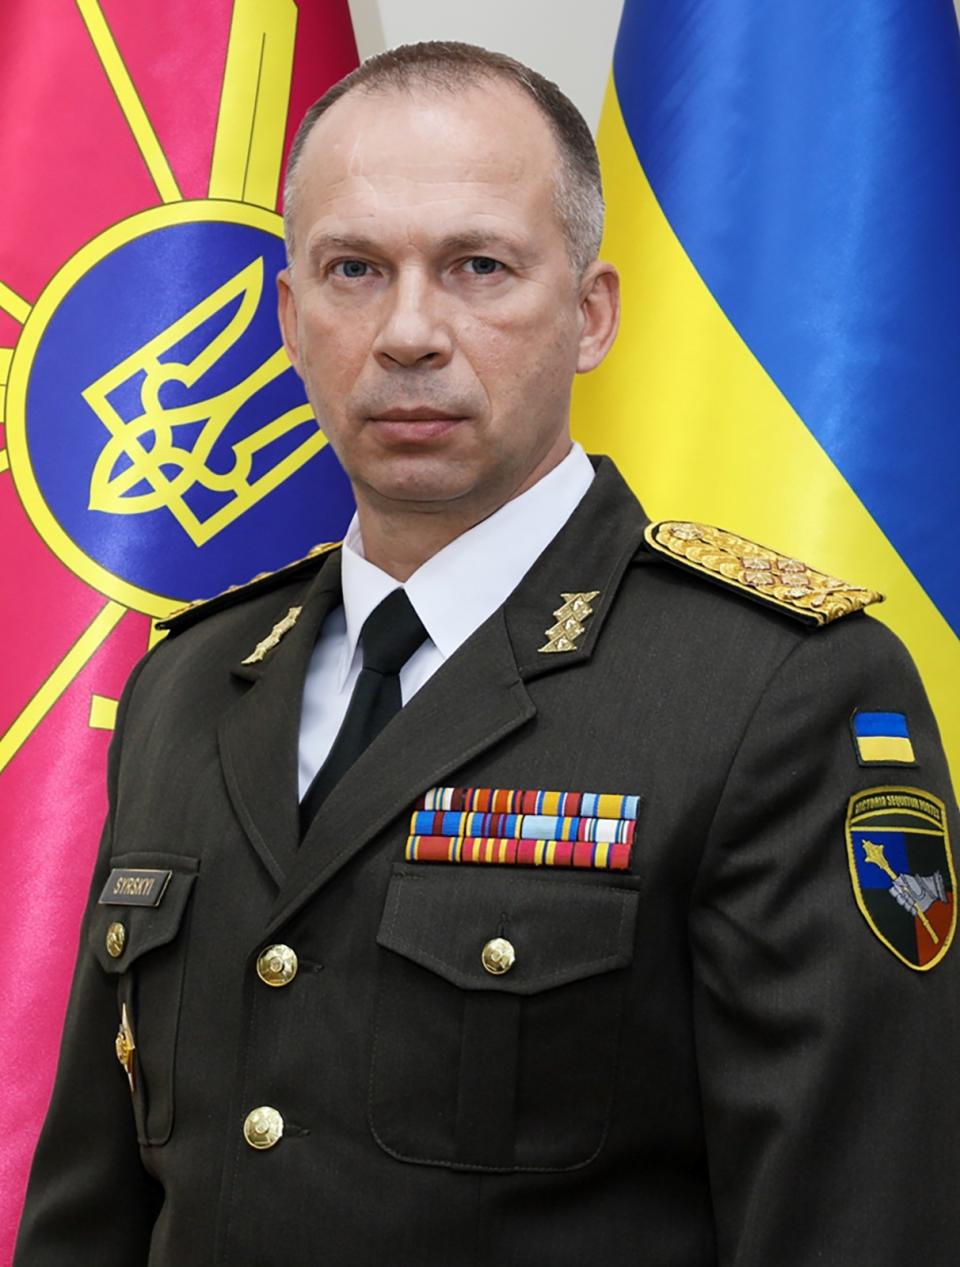 外号“雪豹”的陆军司令瑟尔斯基将接任乌军武装部队总司令。美联社